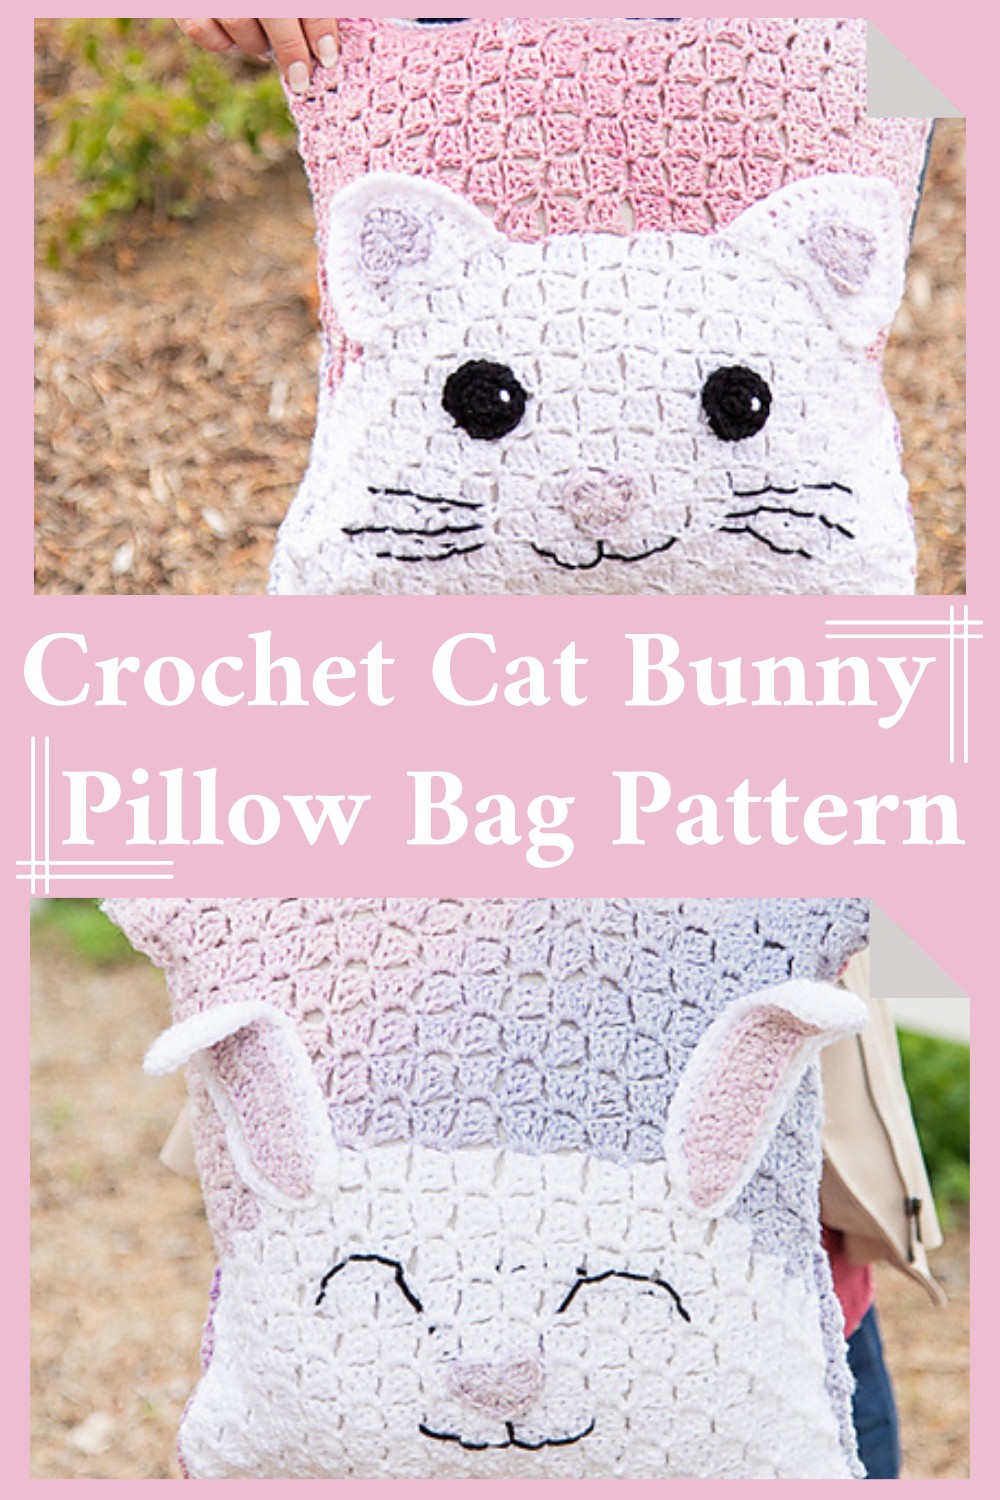 Crochet Cat Pillow Bag